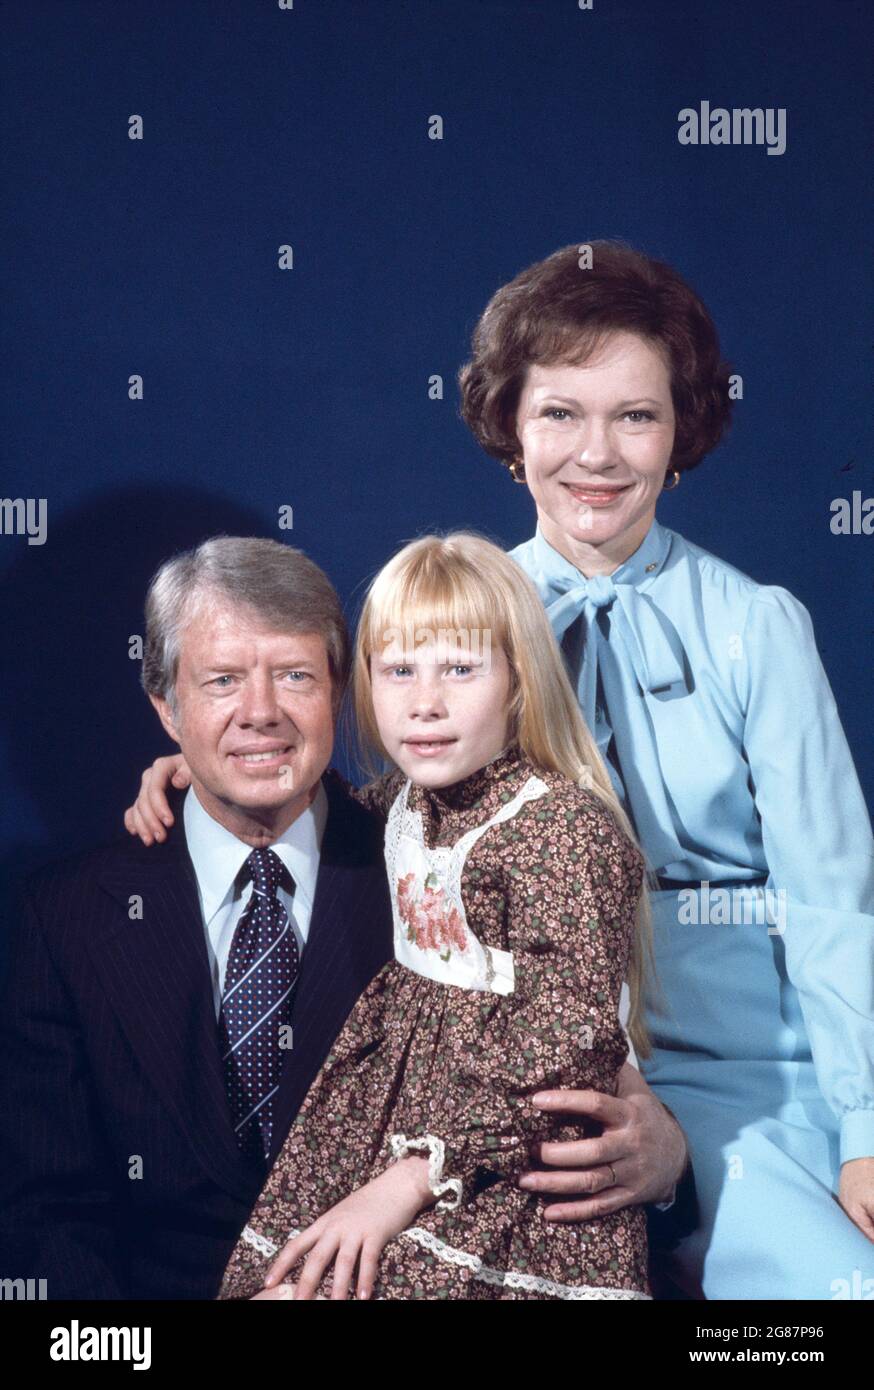 U.S. President Jimmy Carter, Rosalynn Carter and Amy Carter, Family Portrait, Bernard Gotfryd, 1977 Stock Photo